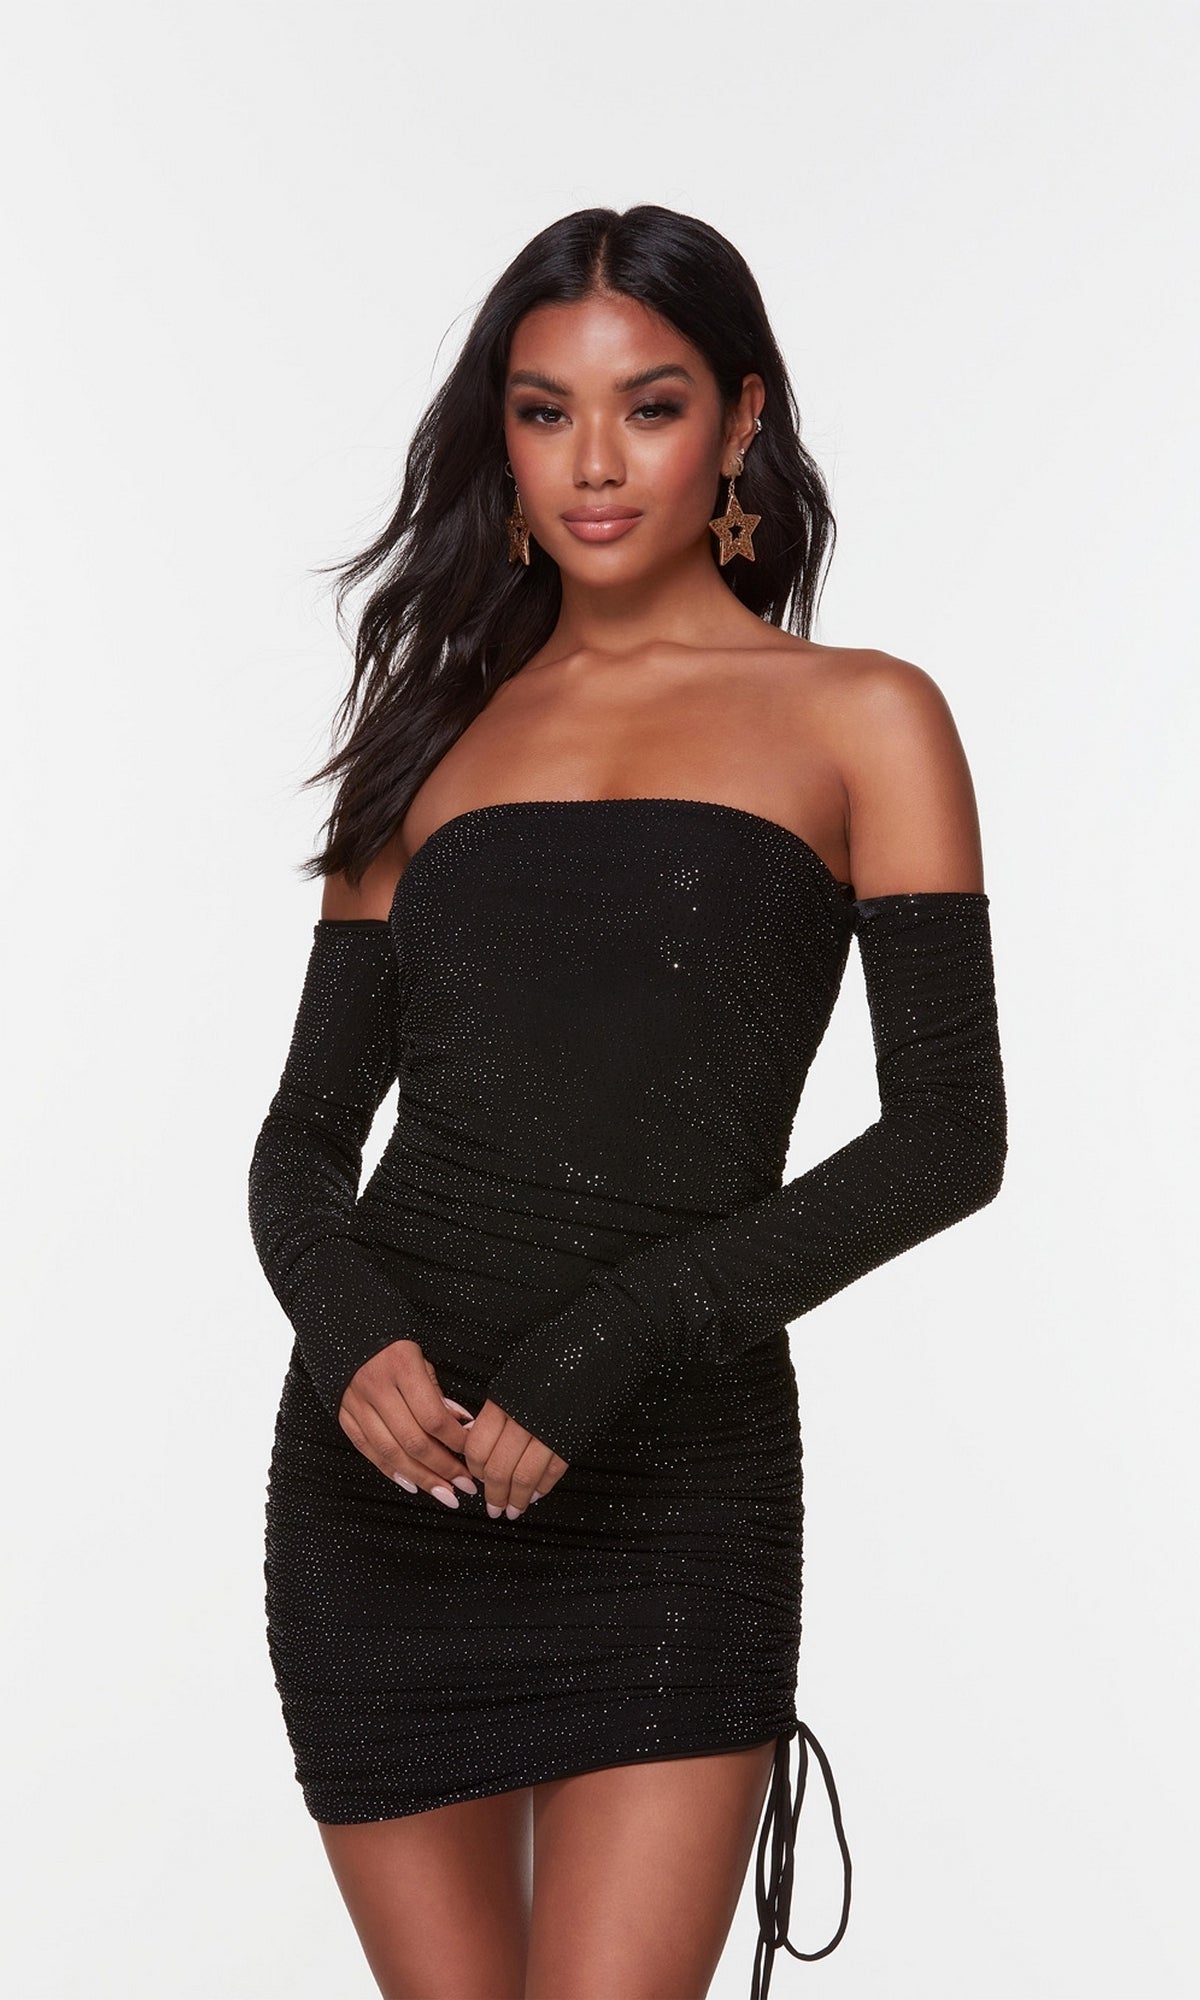 Off-Shoulder-Sleeved Black Homecoming Dress - PromGirl